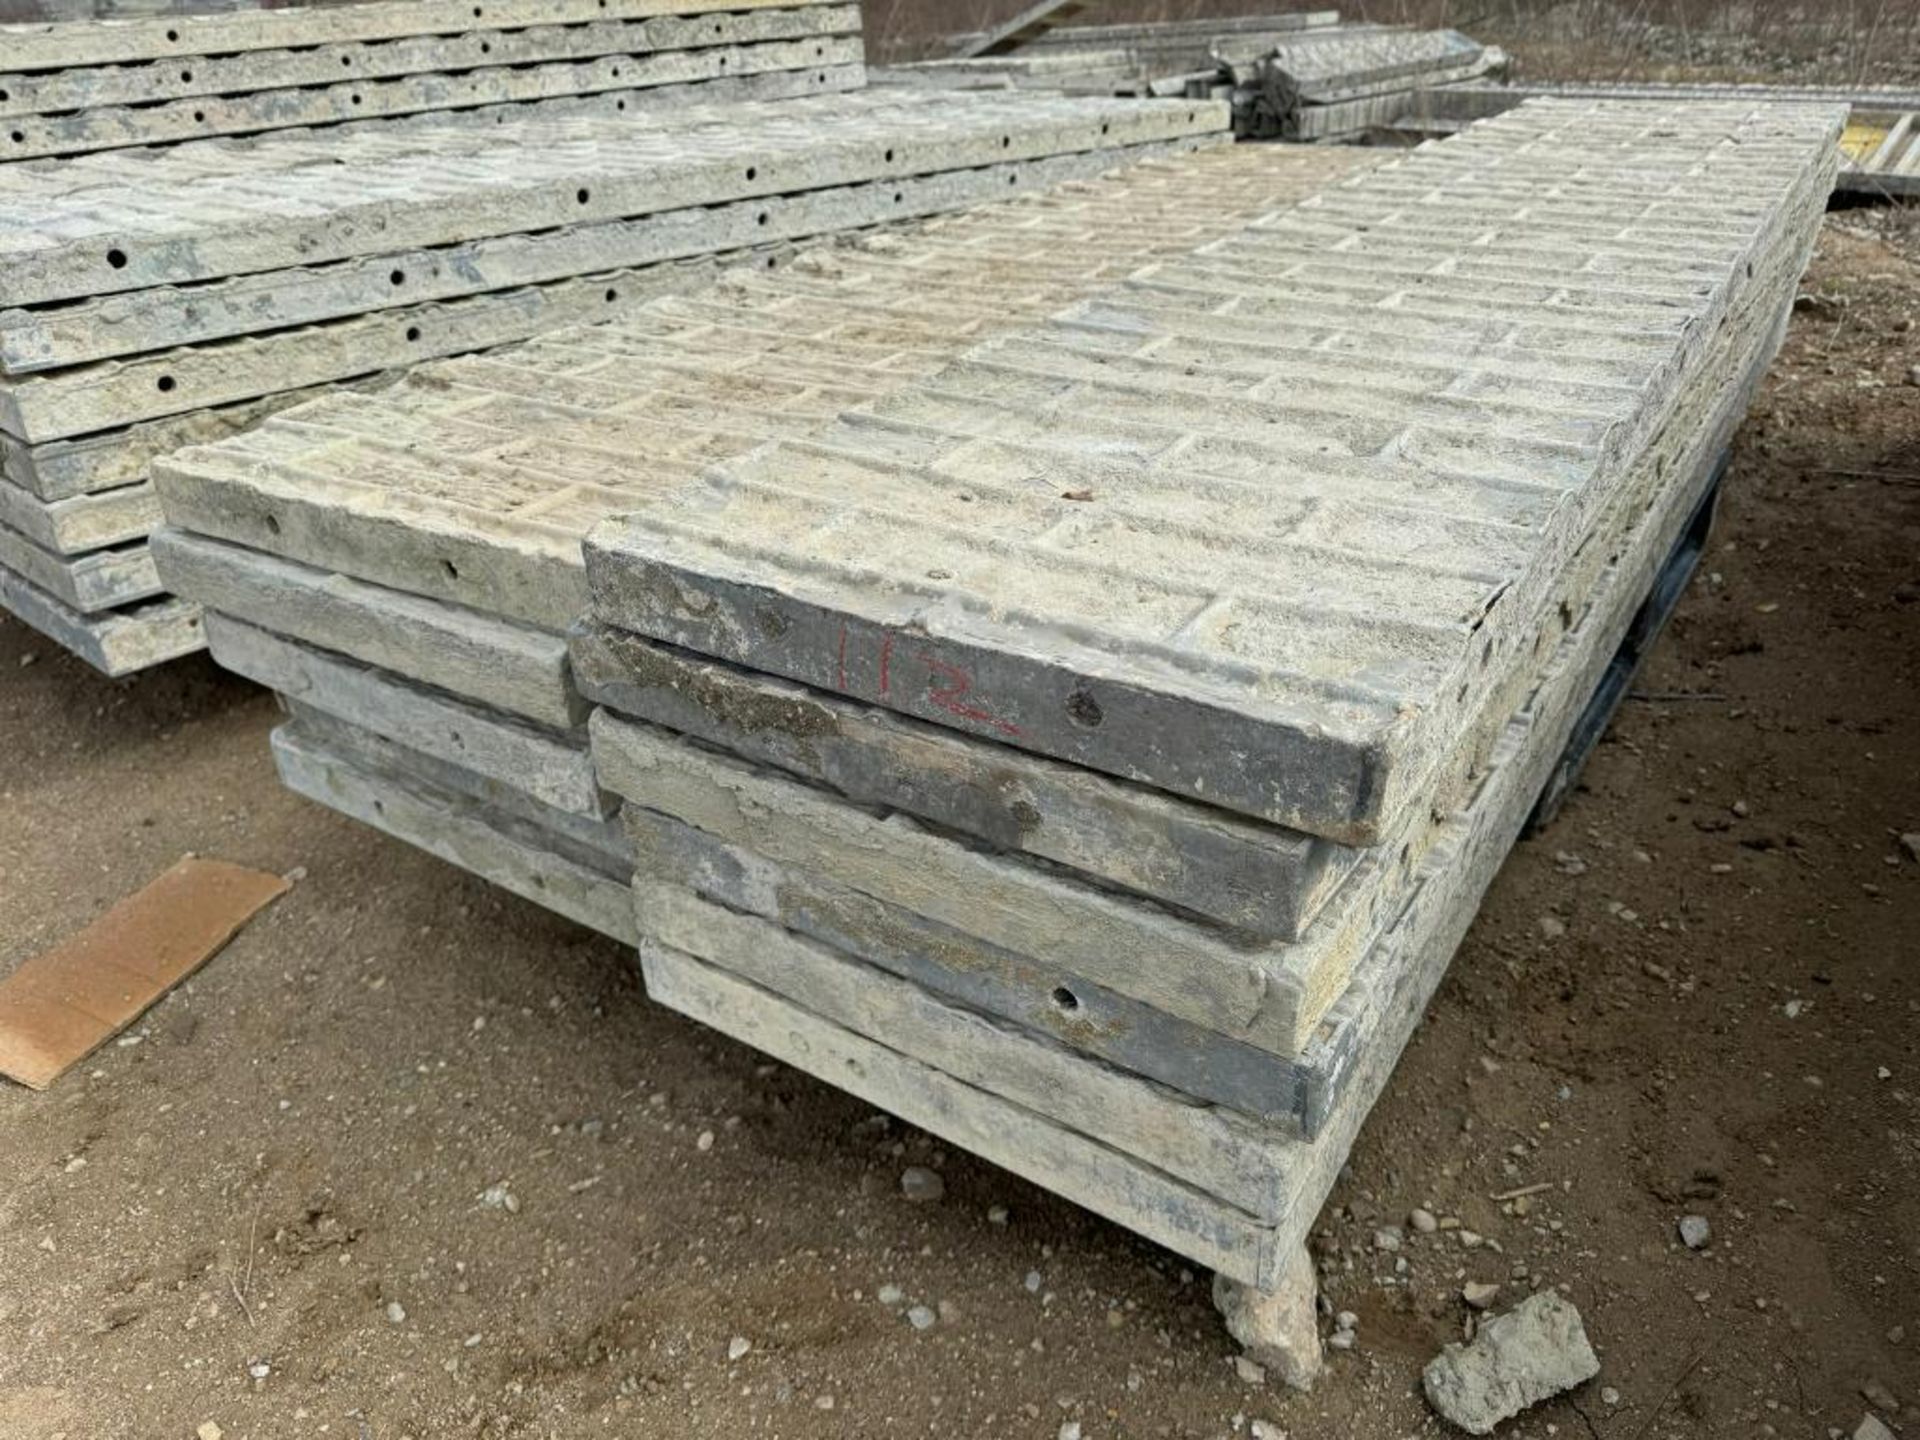 (11) 20" x 8' Textured Brick Aluminum Concrete Forms